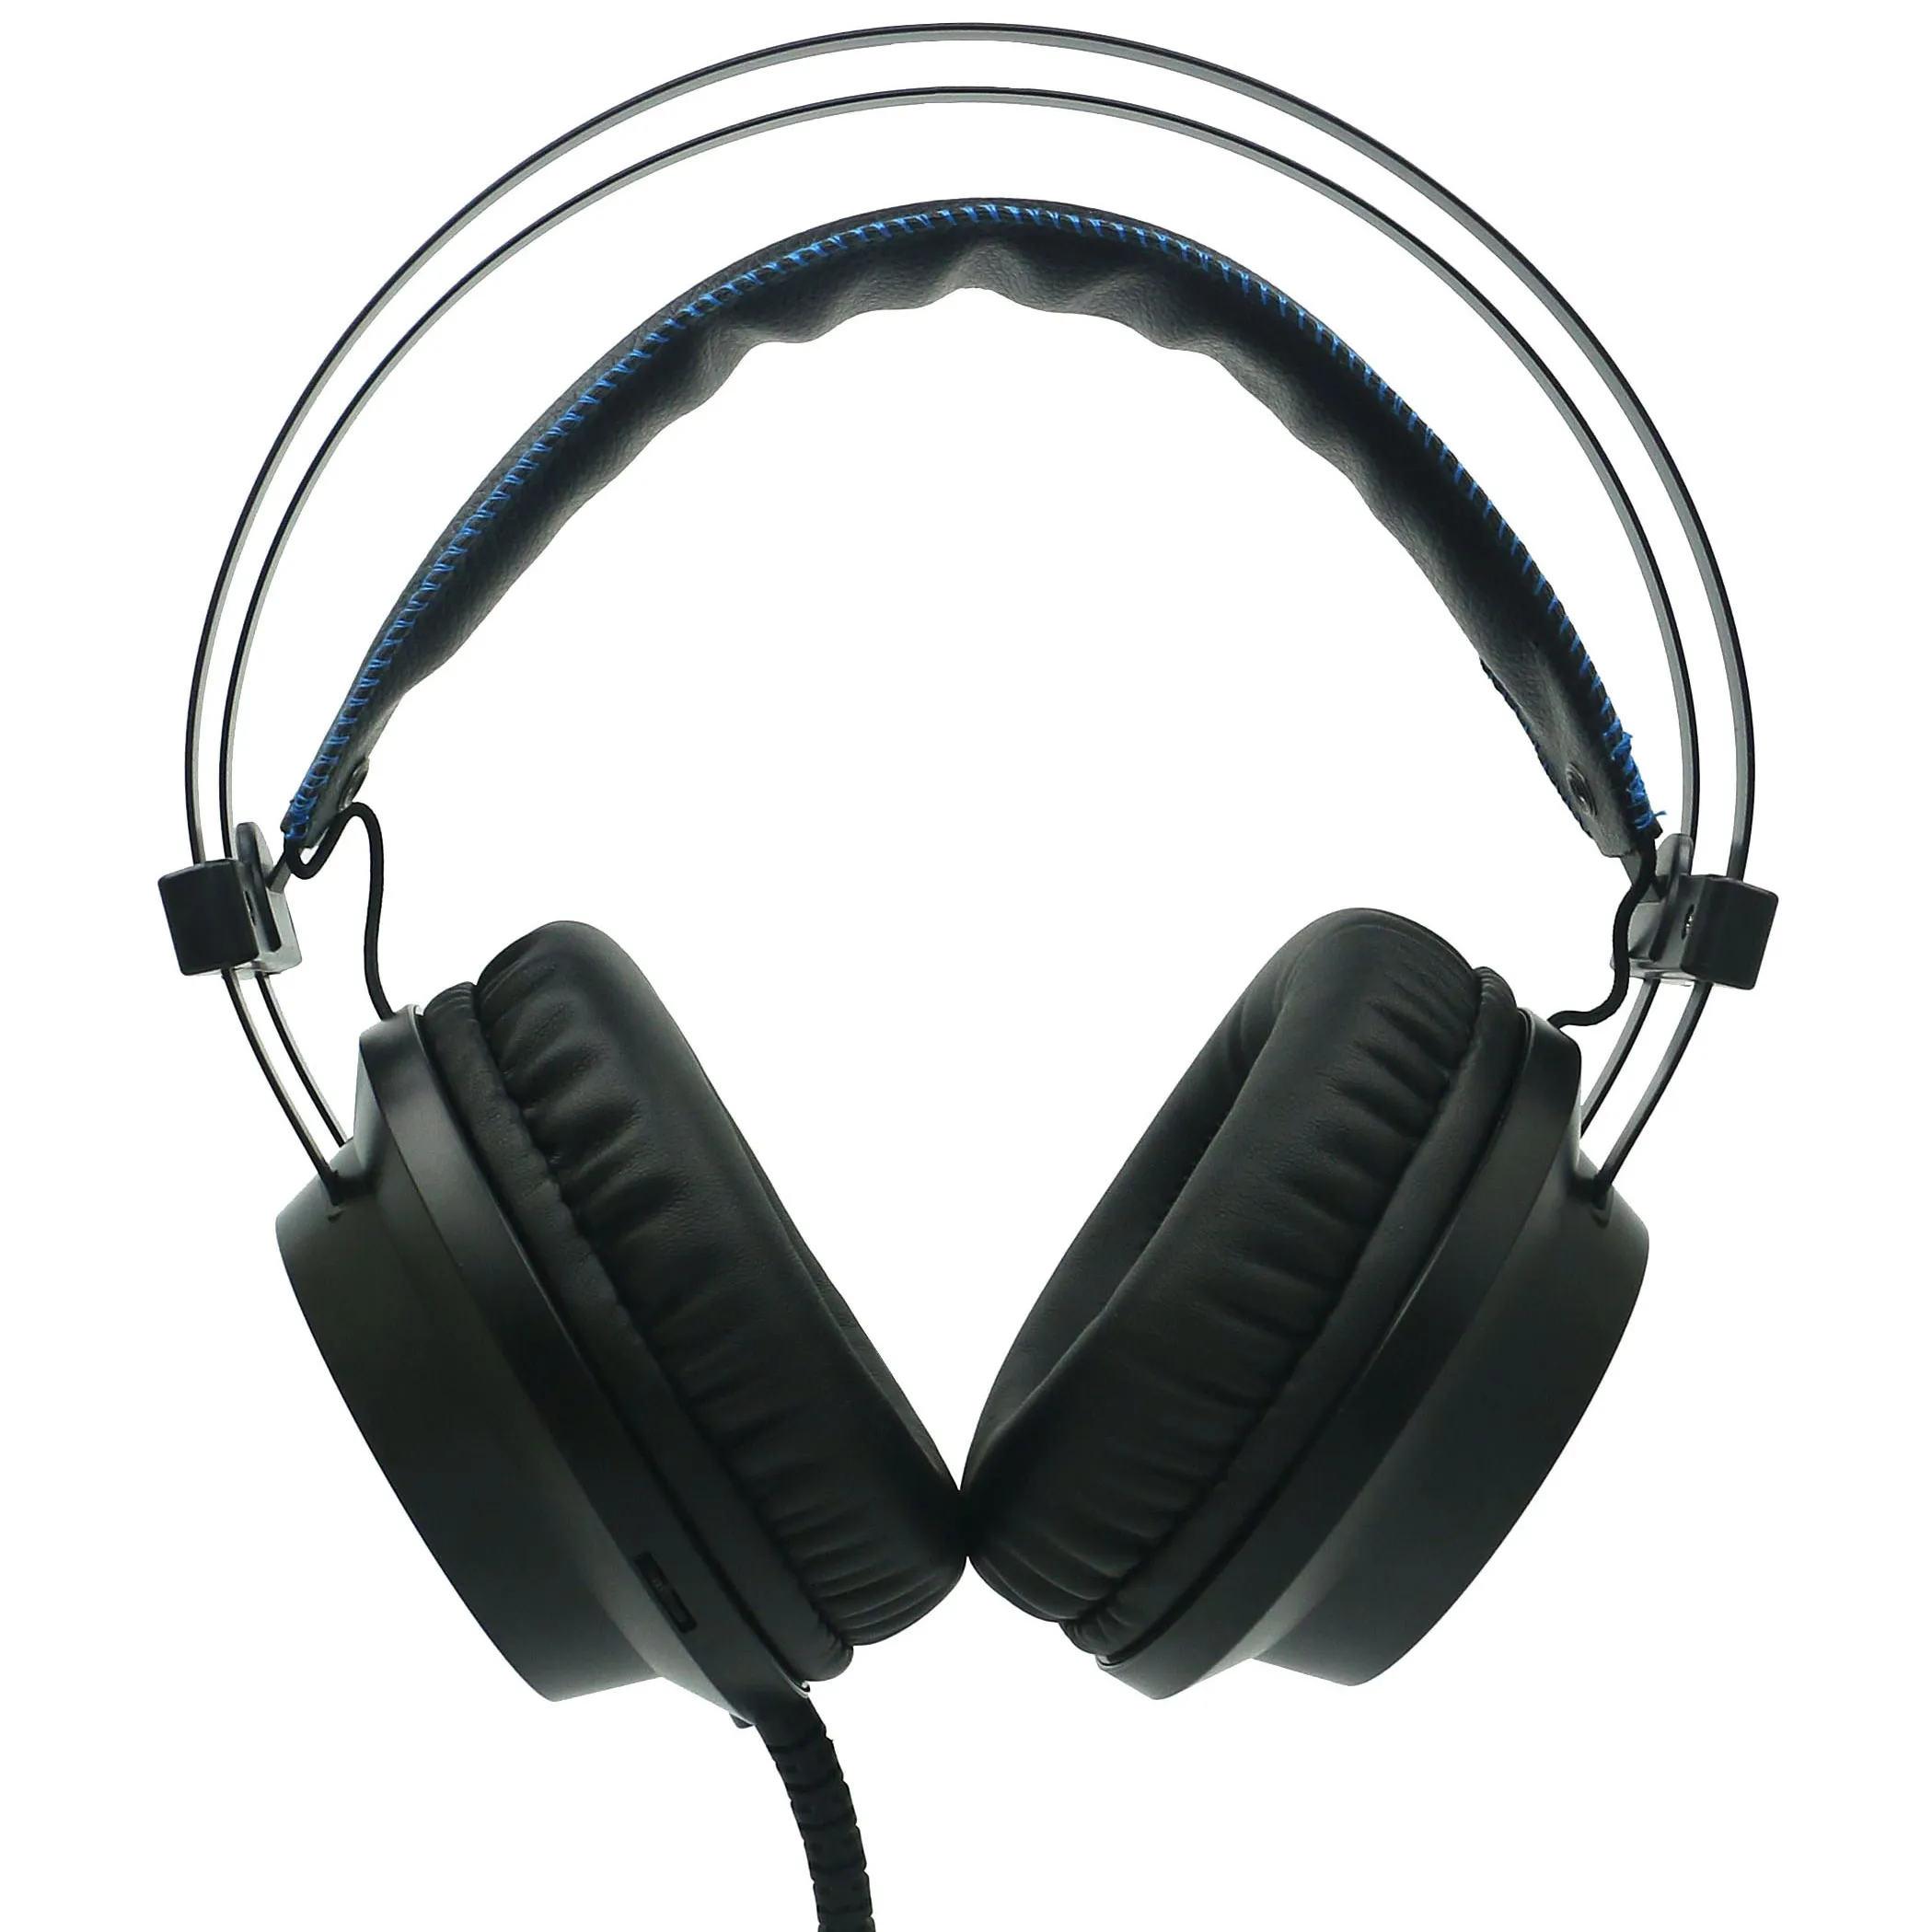 On Ear Audio Auricolare Stereo A Cancellazione di Rumore DELL'UNITÀ di elaborazione Razer USB Headset 7.1 LED Surround Sound Wired DJ Mic Gaming Headset Cuffia